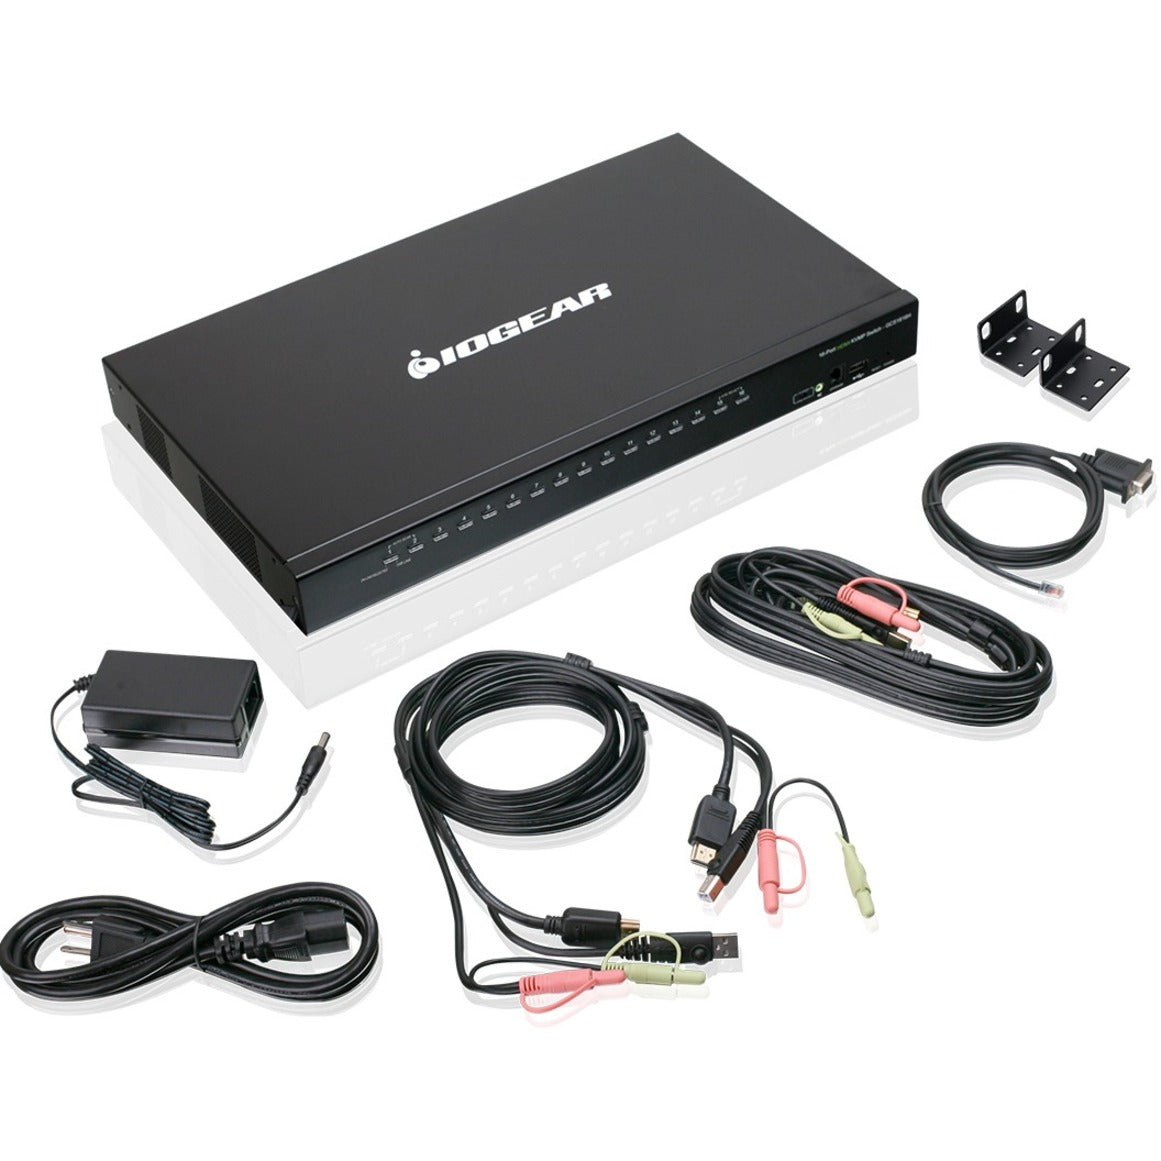 IOGEAR GCS1816H 16-منفذ USB HDMI KVM مفتاح مع صوت، TAA متوافق  العلامة التجارية: IOGEAR ترجمة العلامة التجارية: آيوجير